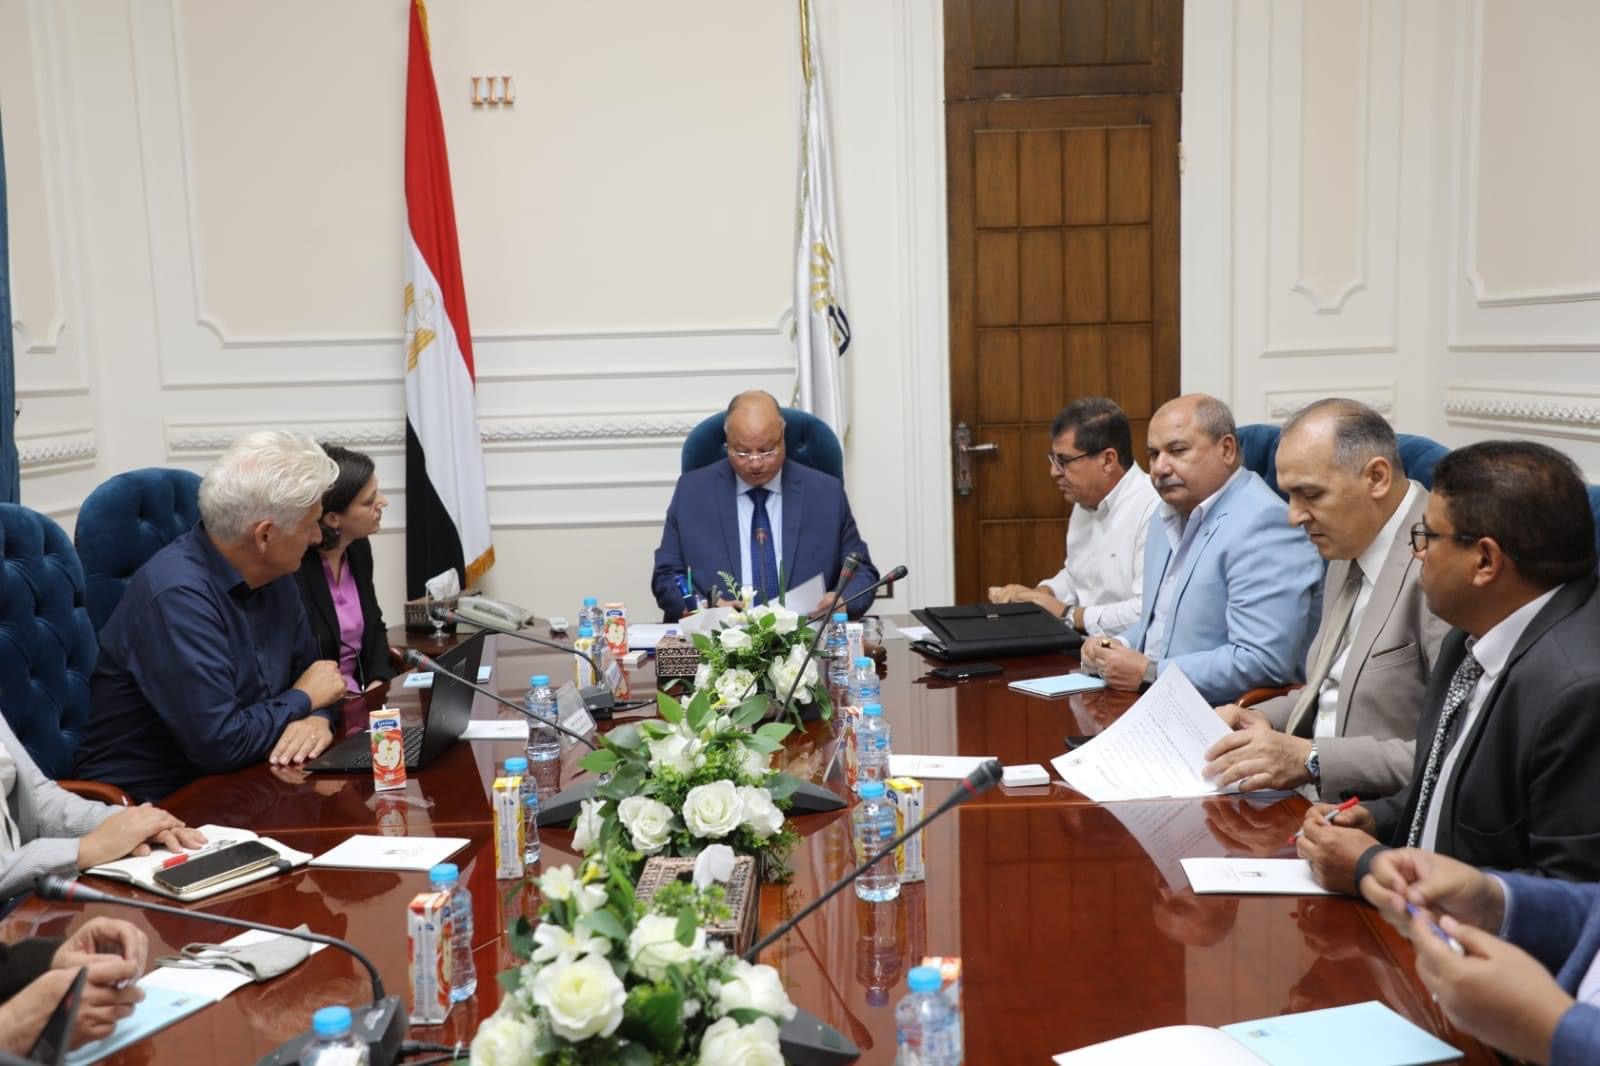 محافظ القاهرة يلتقى وفد الوكالة الألمانية لمناقشة استكمال مشاريع التطوير